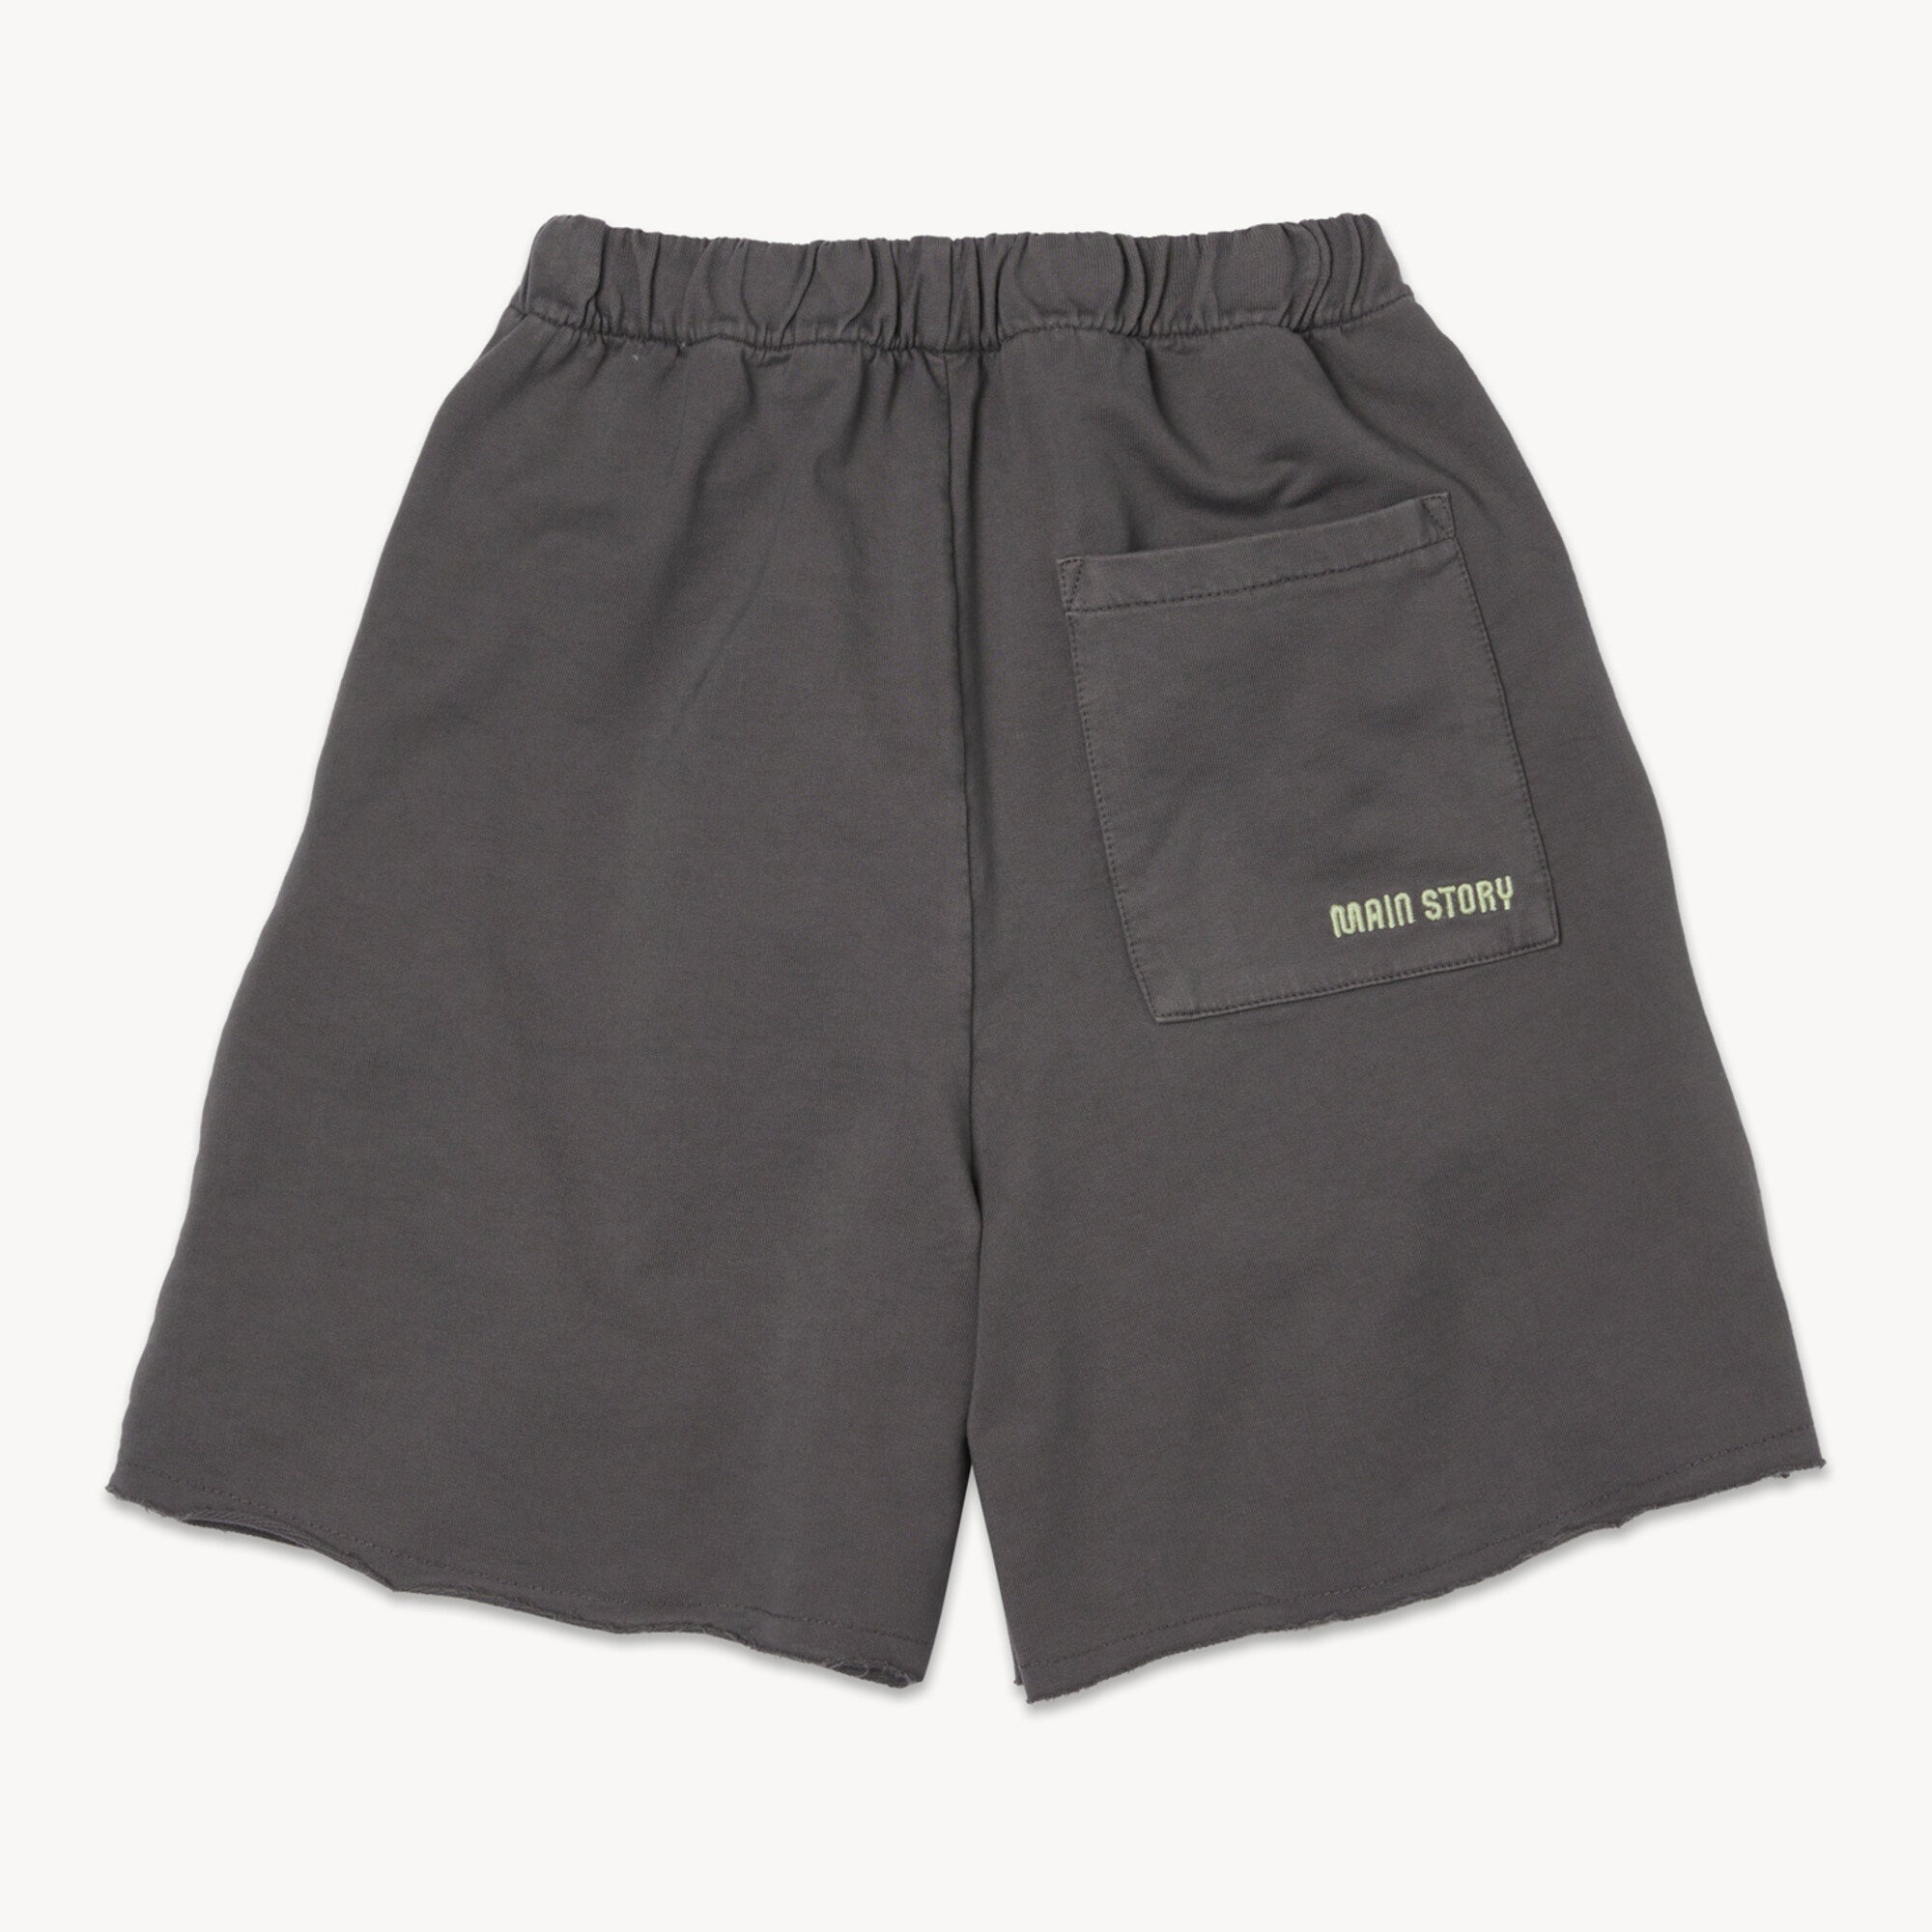 Boys & Girls Dark Brown Cotton Shorts